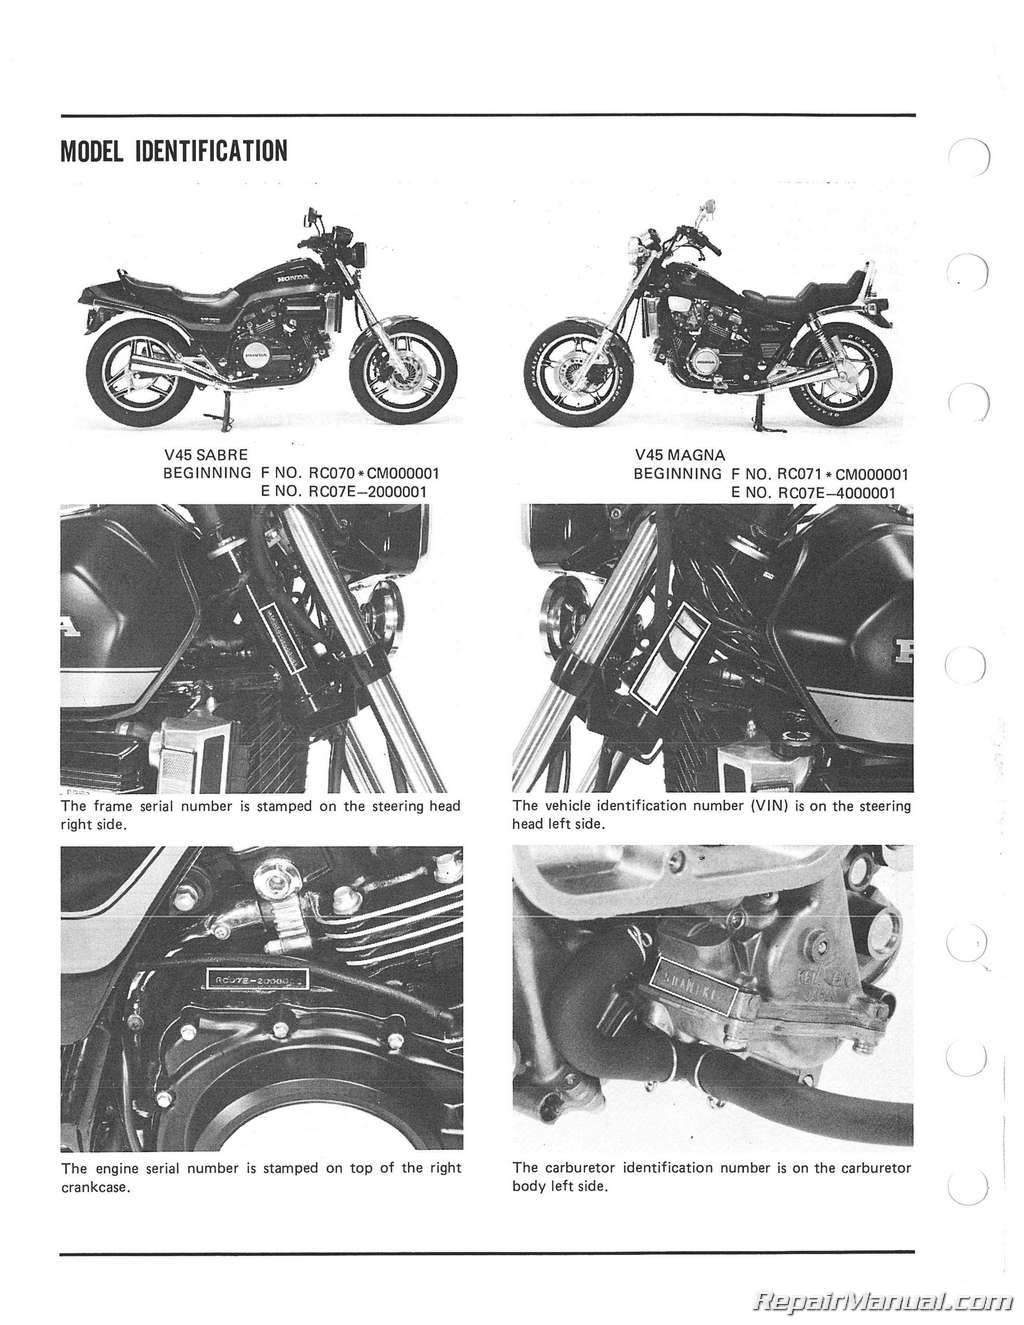 1982 Honda sabre owners manual #4